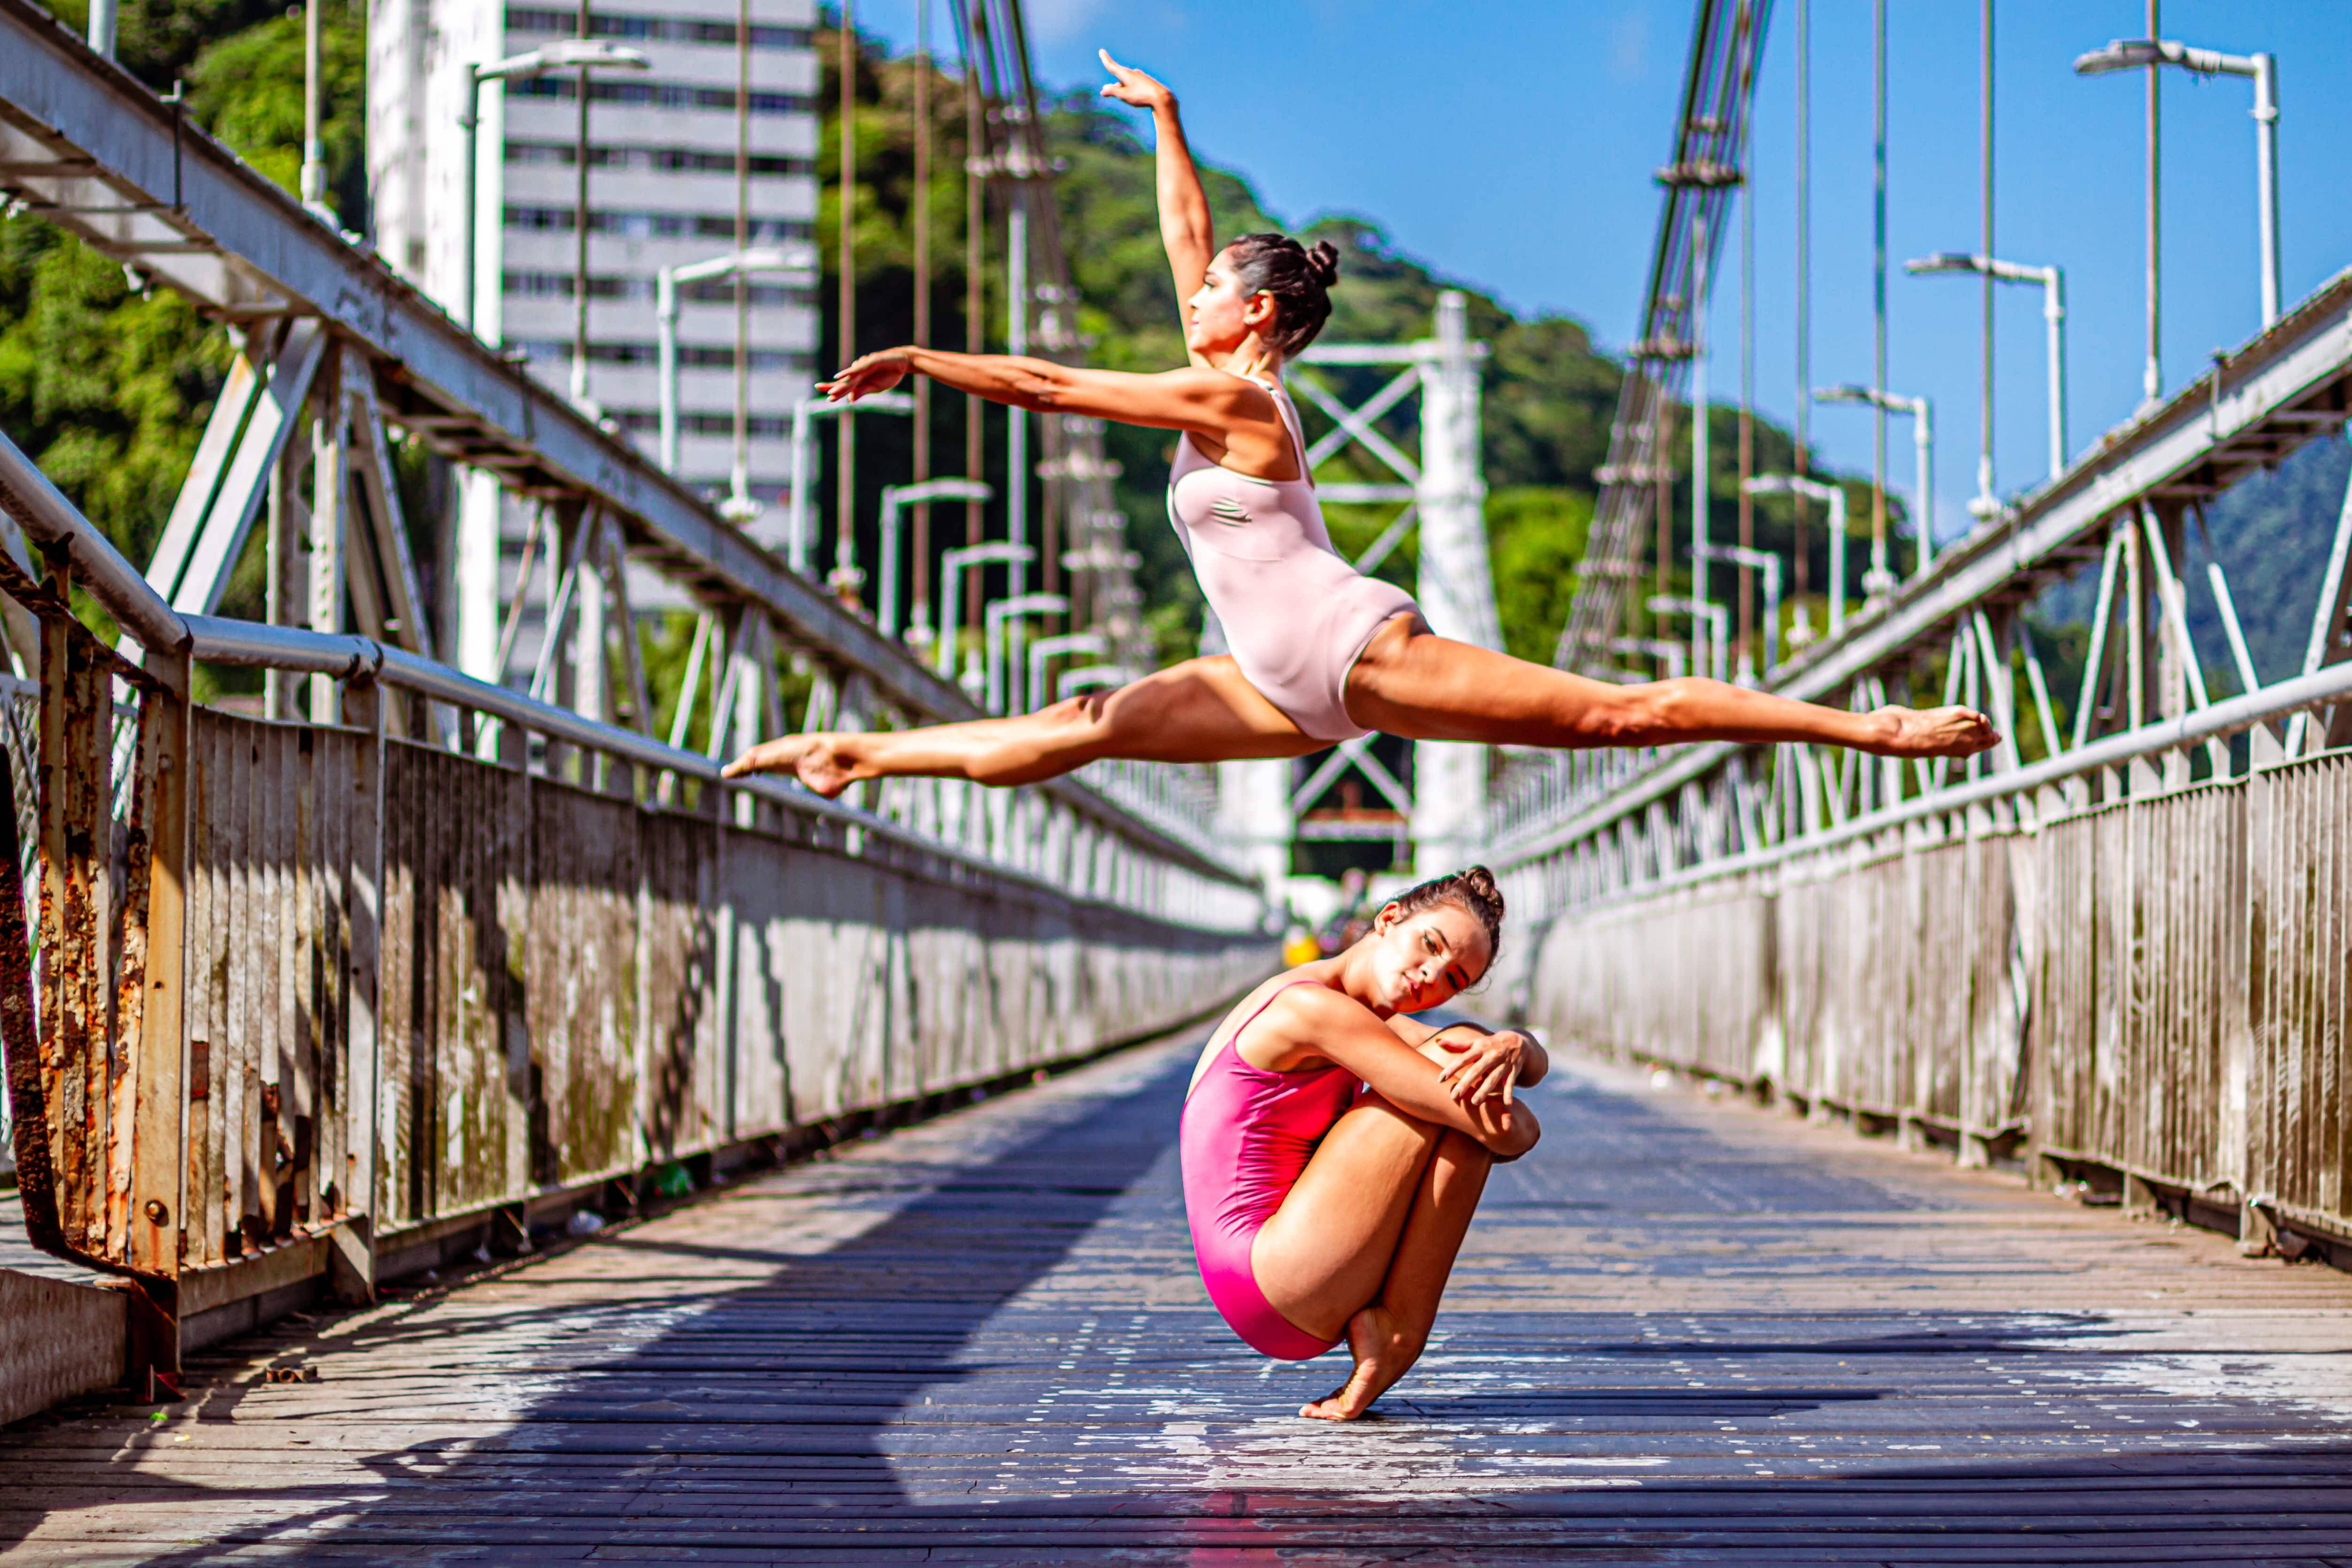 Bailarinas na ponte pênsil. Foto: Reprodução/Clica e Respira